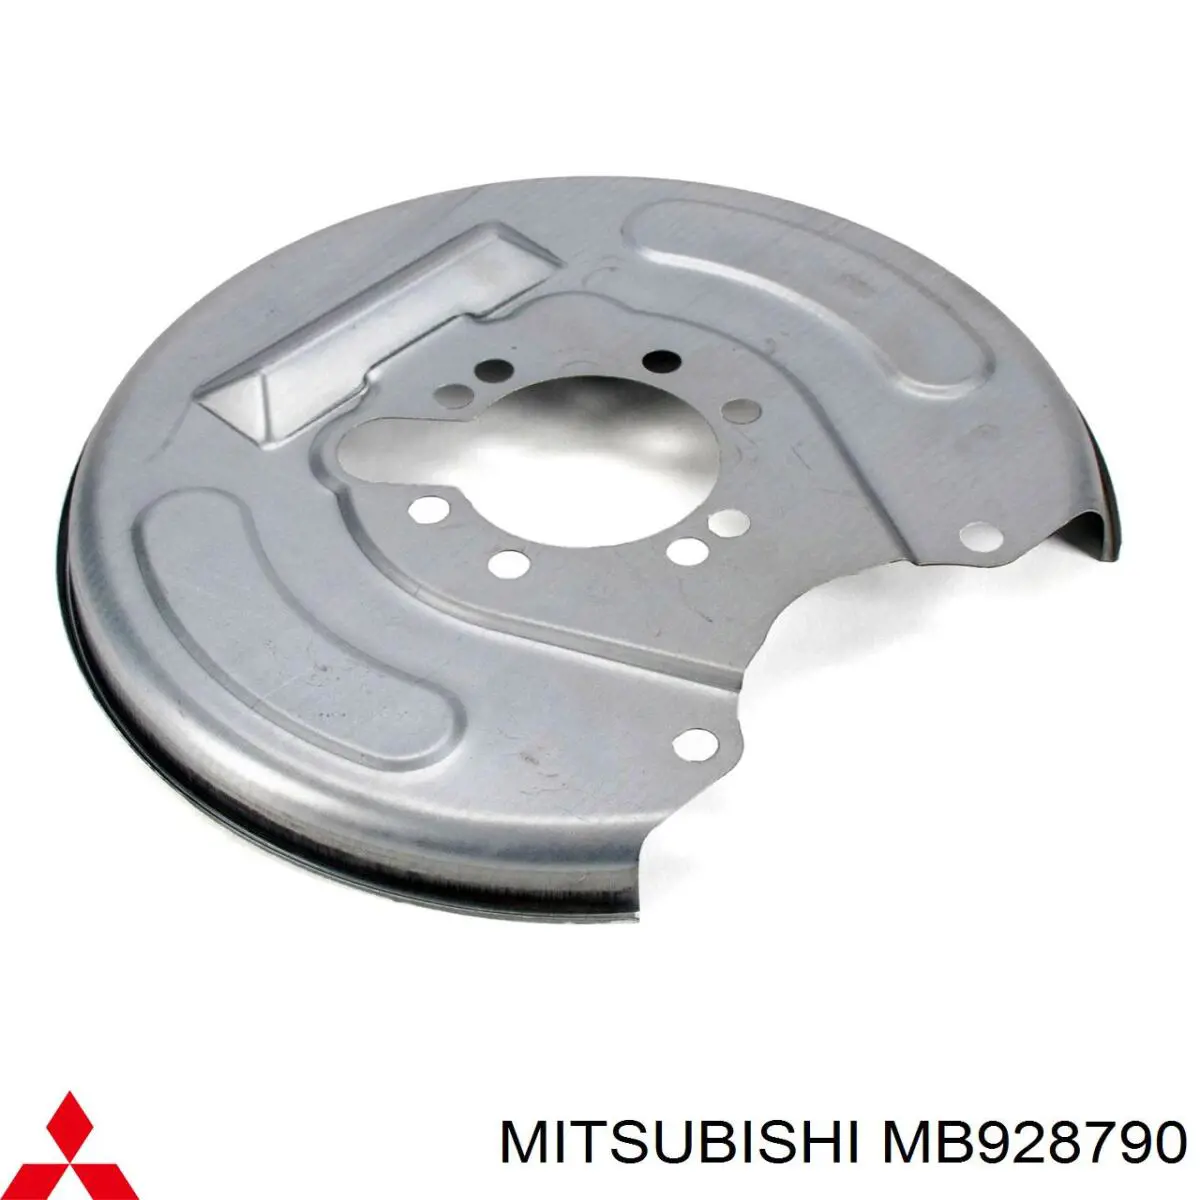 MB928790 Mitsubishi chapa protectora contra salpicaduras, disco de freno trasero izquierdo